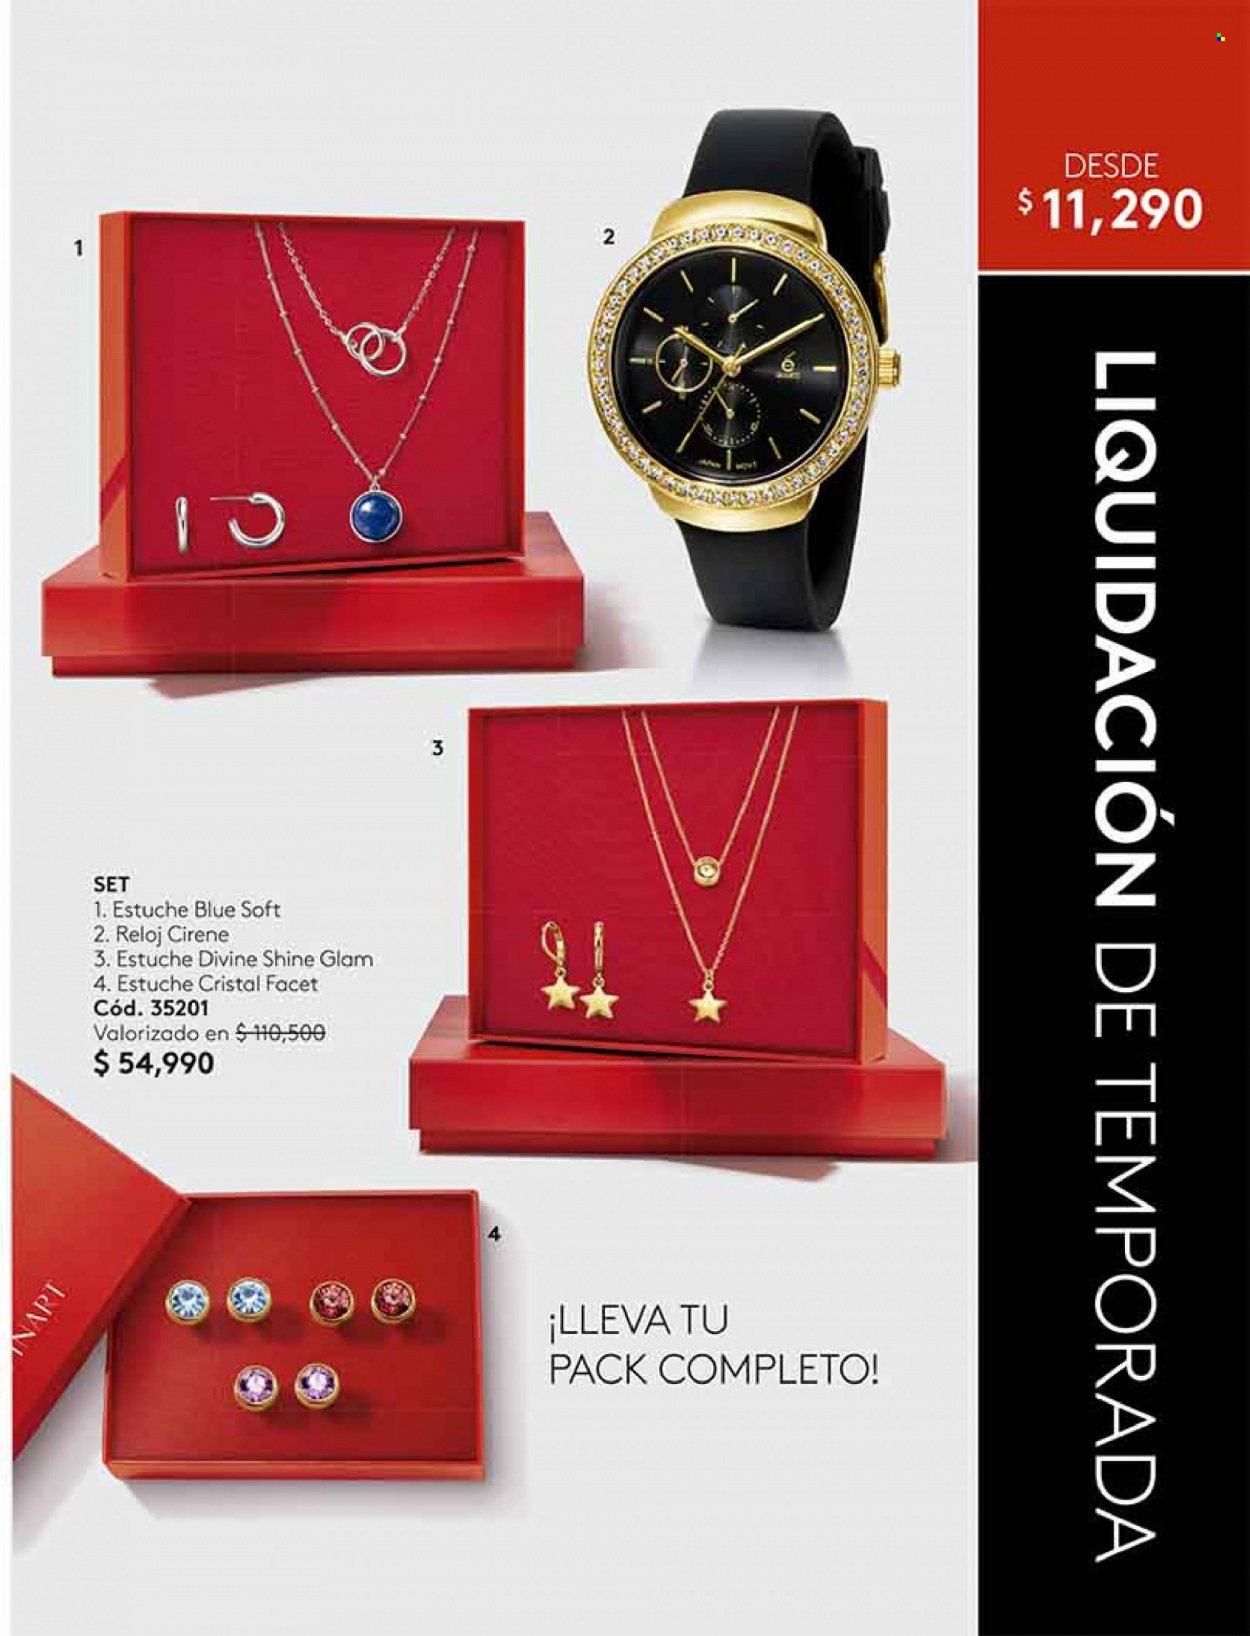 Catálogo Ésika - Ventas - reloj. Página 121.